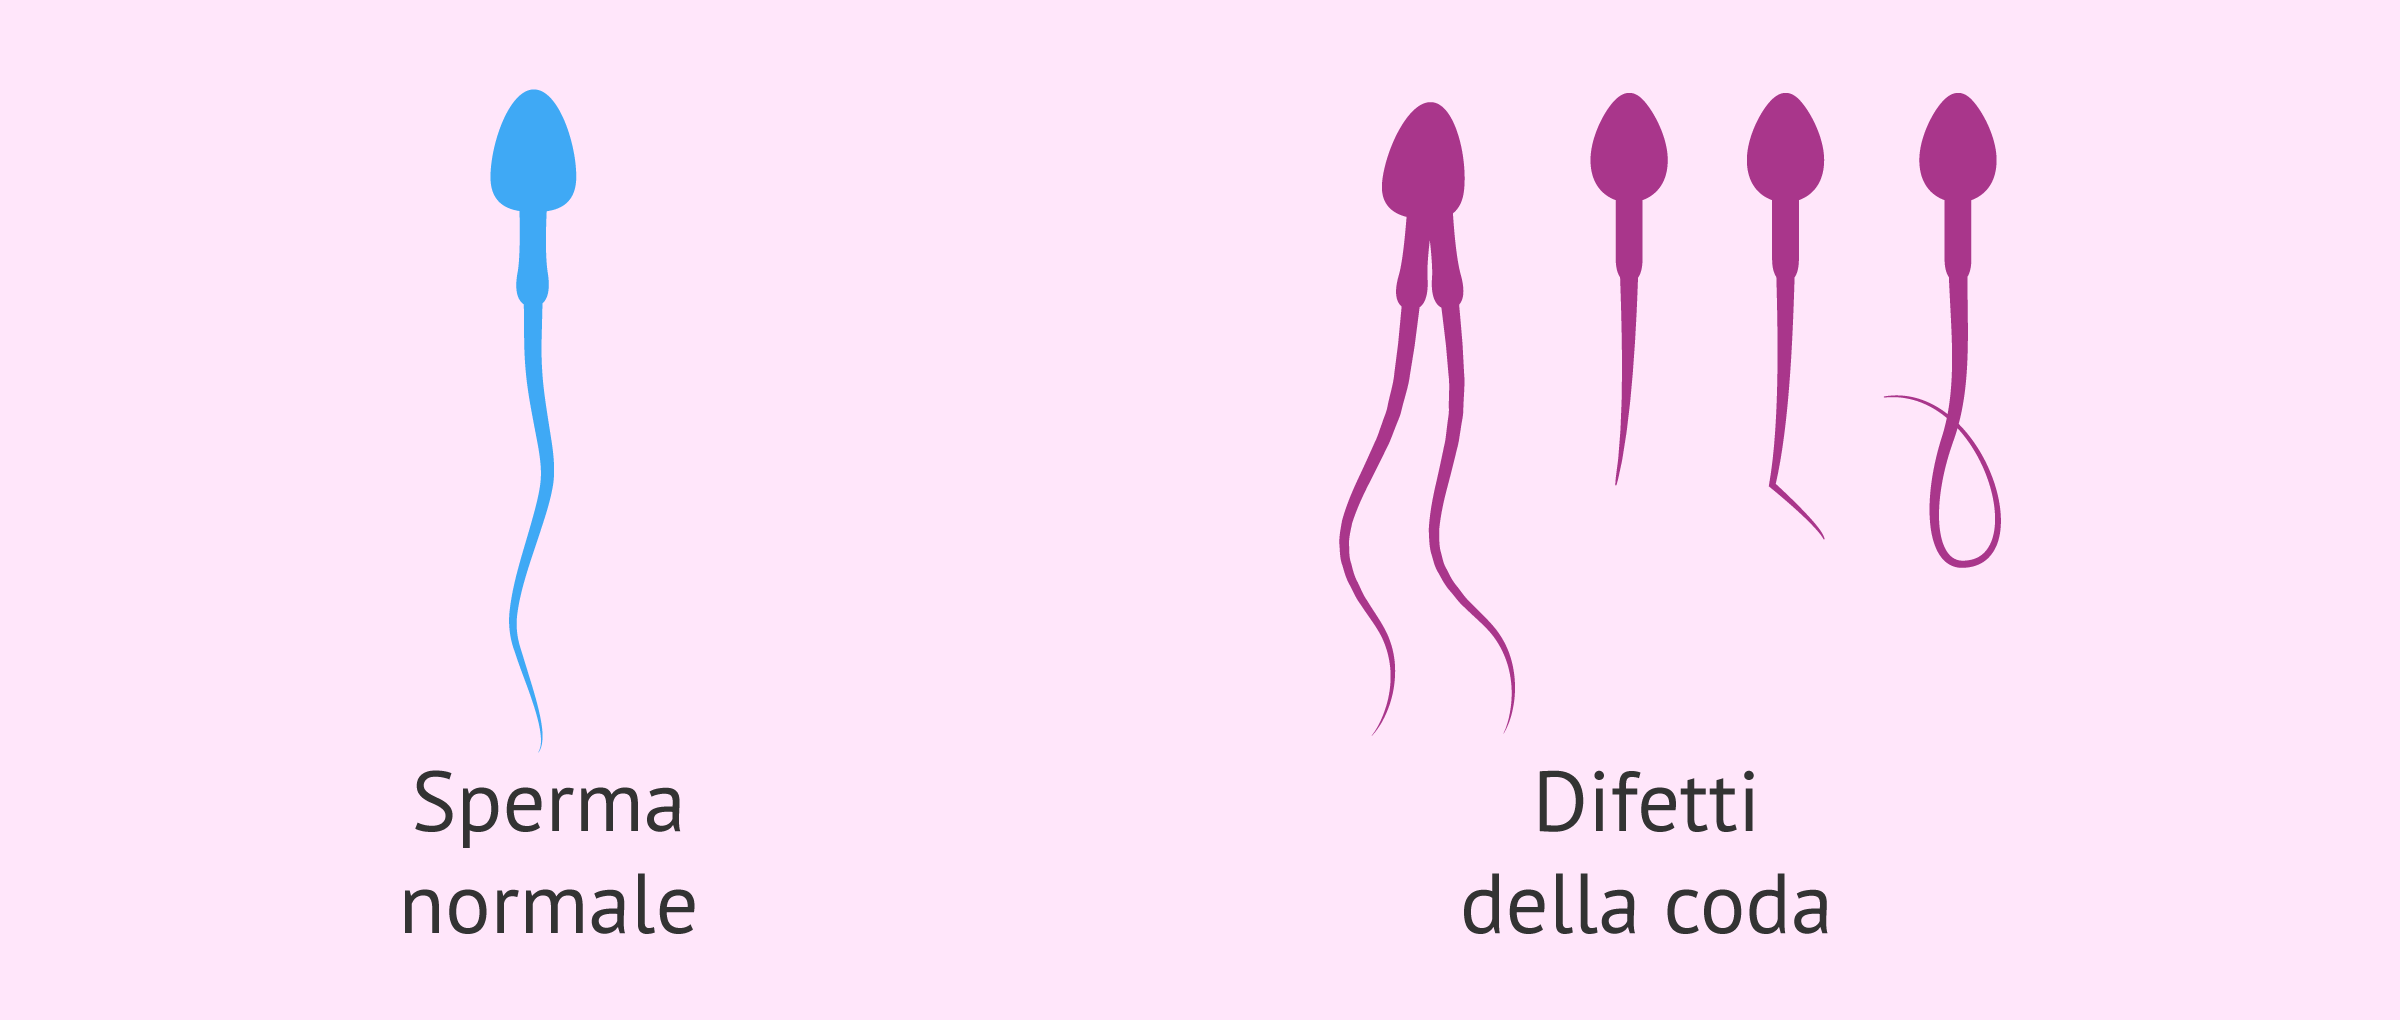 Difetti nella coda dello sperma